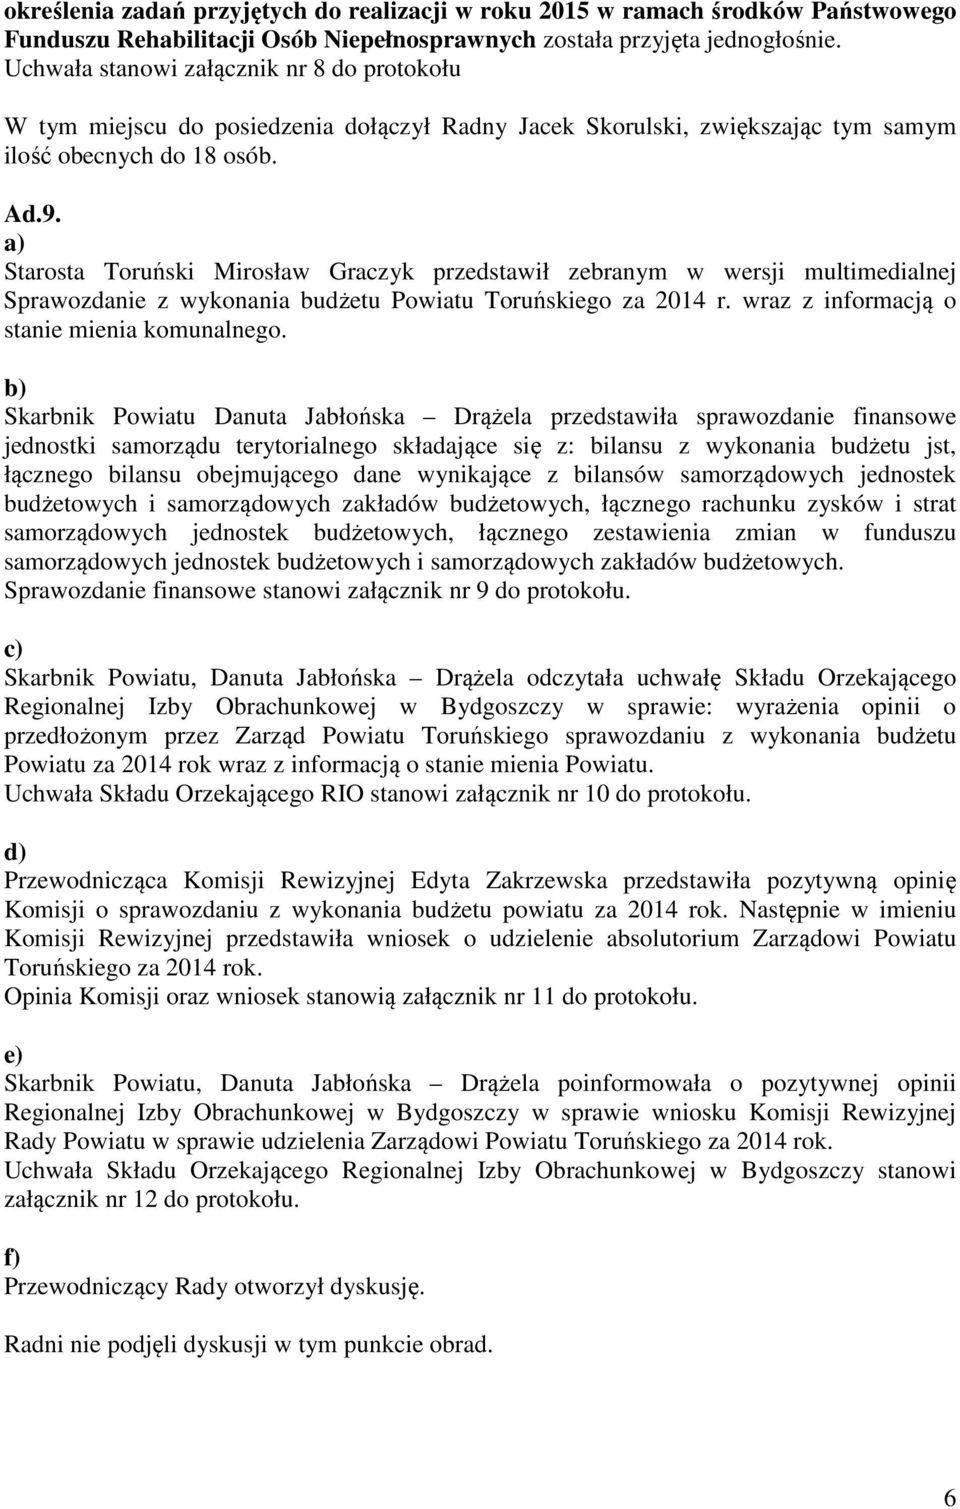 a) Starosta Toruński Mirosław Graczyk przedstawił zebranym w wersji multimedialnej Sprawozdanie z wykonania budżetu Powiatu Toruńskiego za 2014 r. wraz z informacją o stanie mienia komunalnego.